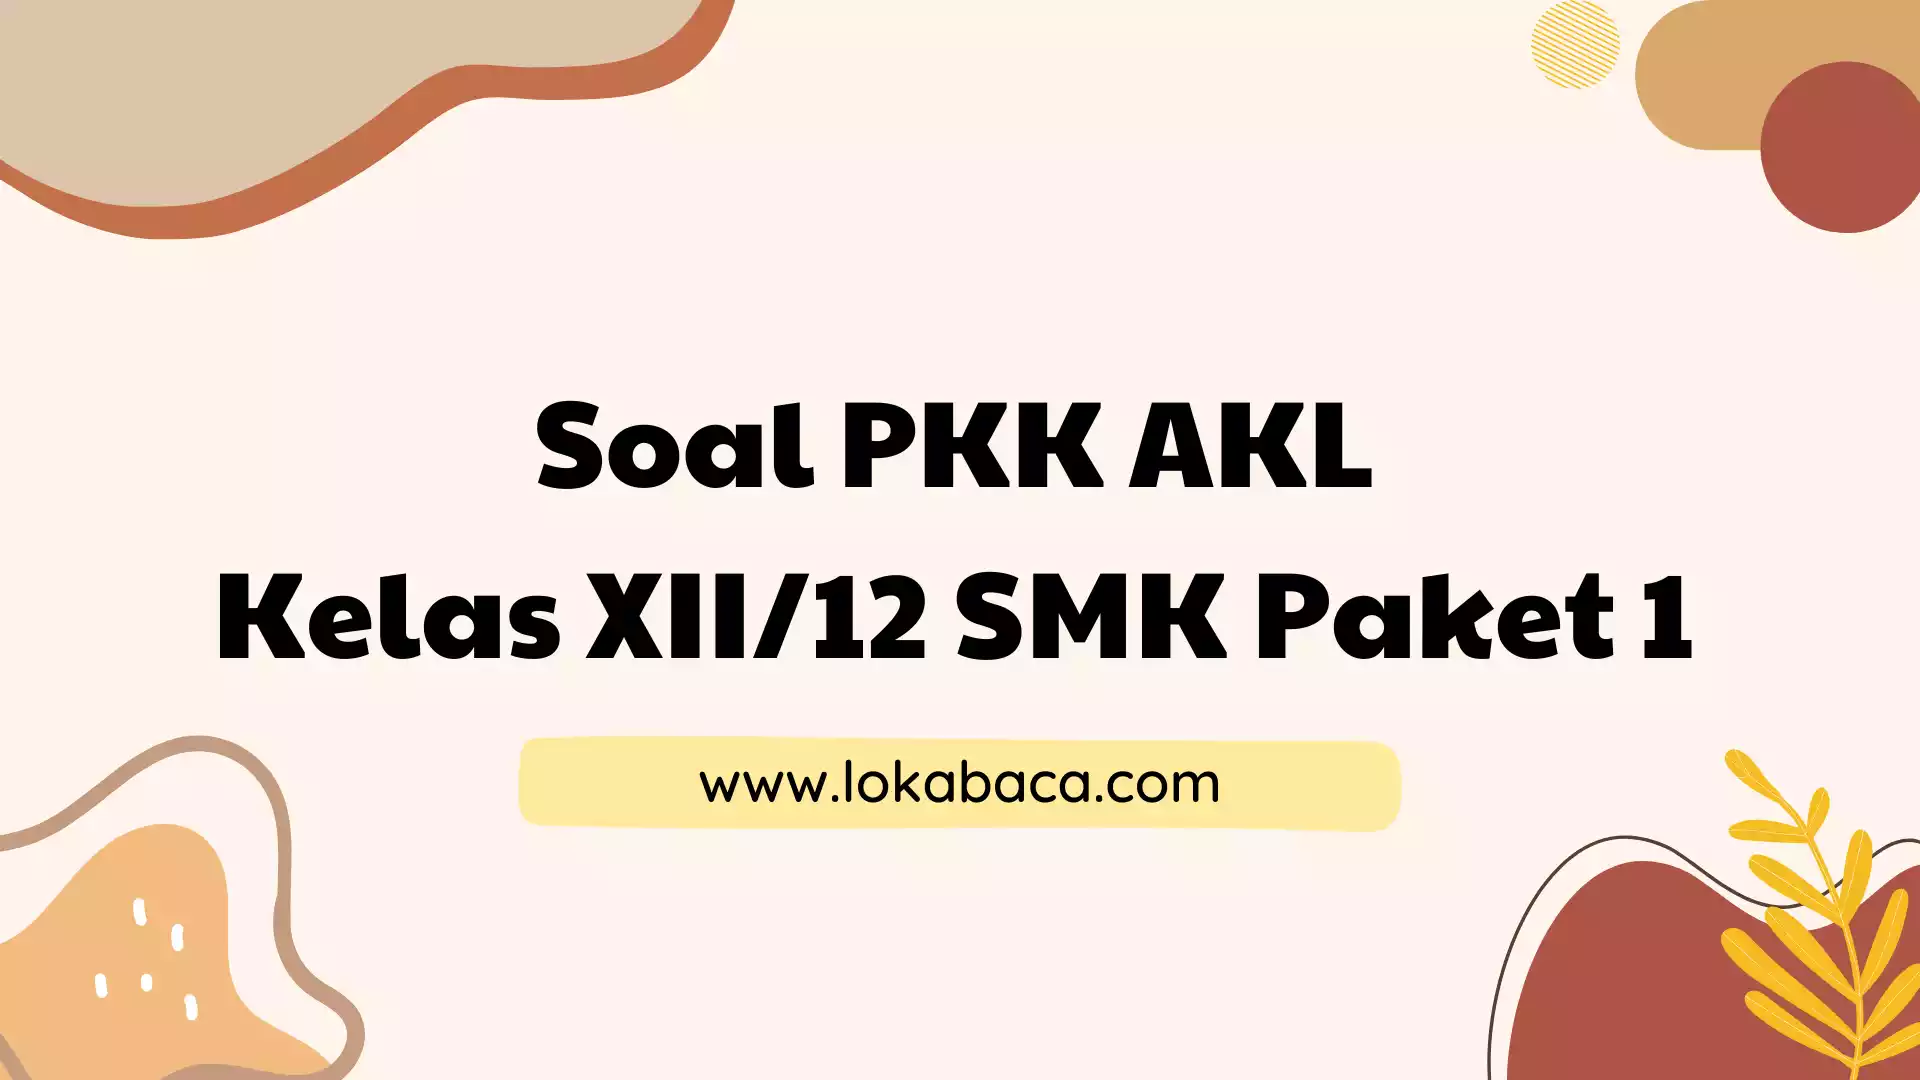 Soal PKK AKL Kelas XII/12 SMK Beserta Kunci Jawabannya Paket 1